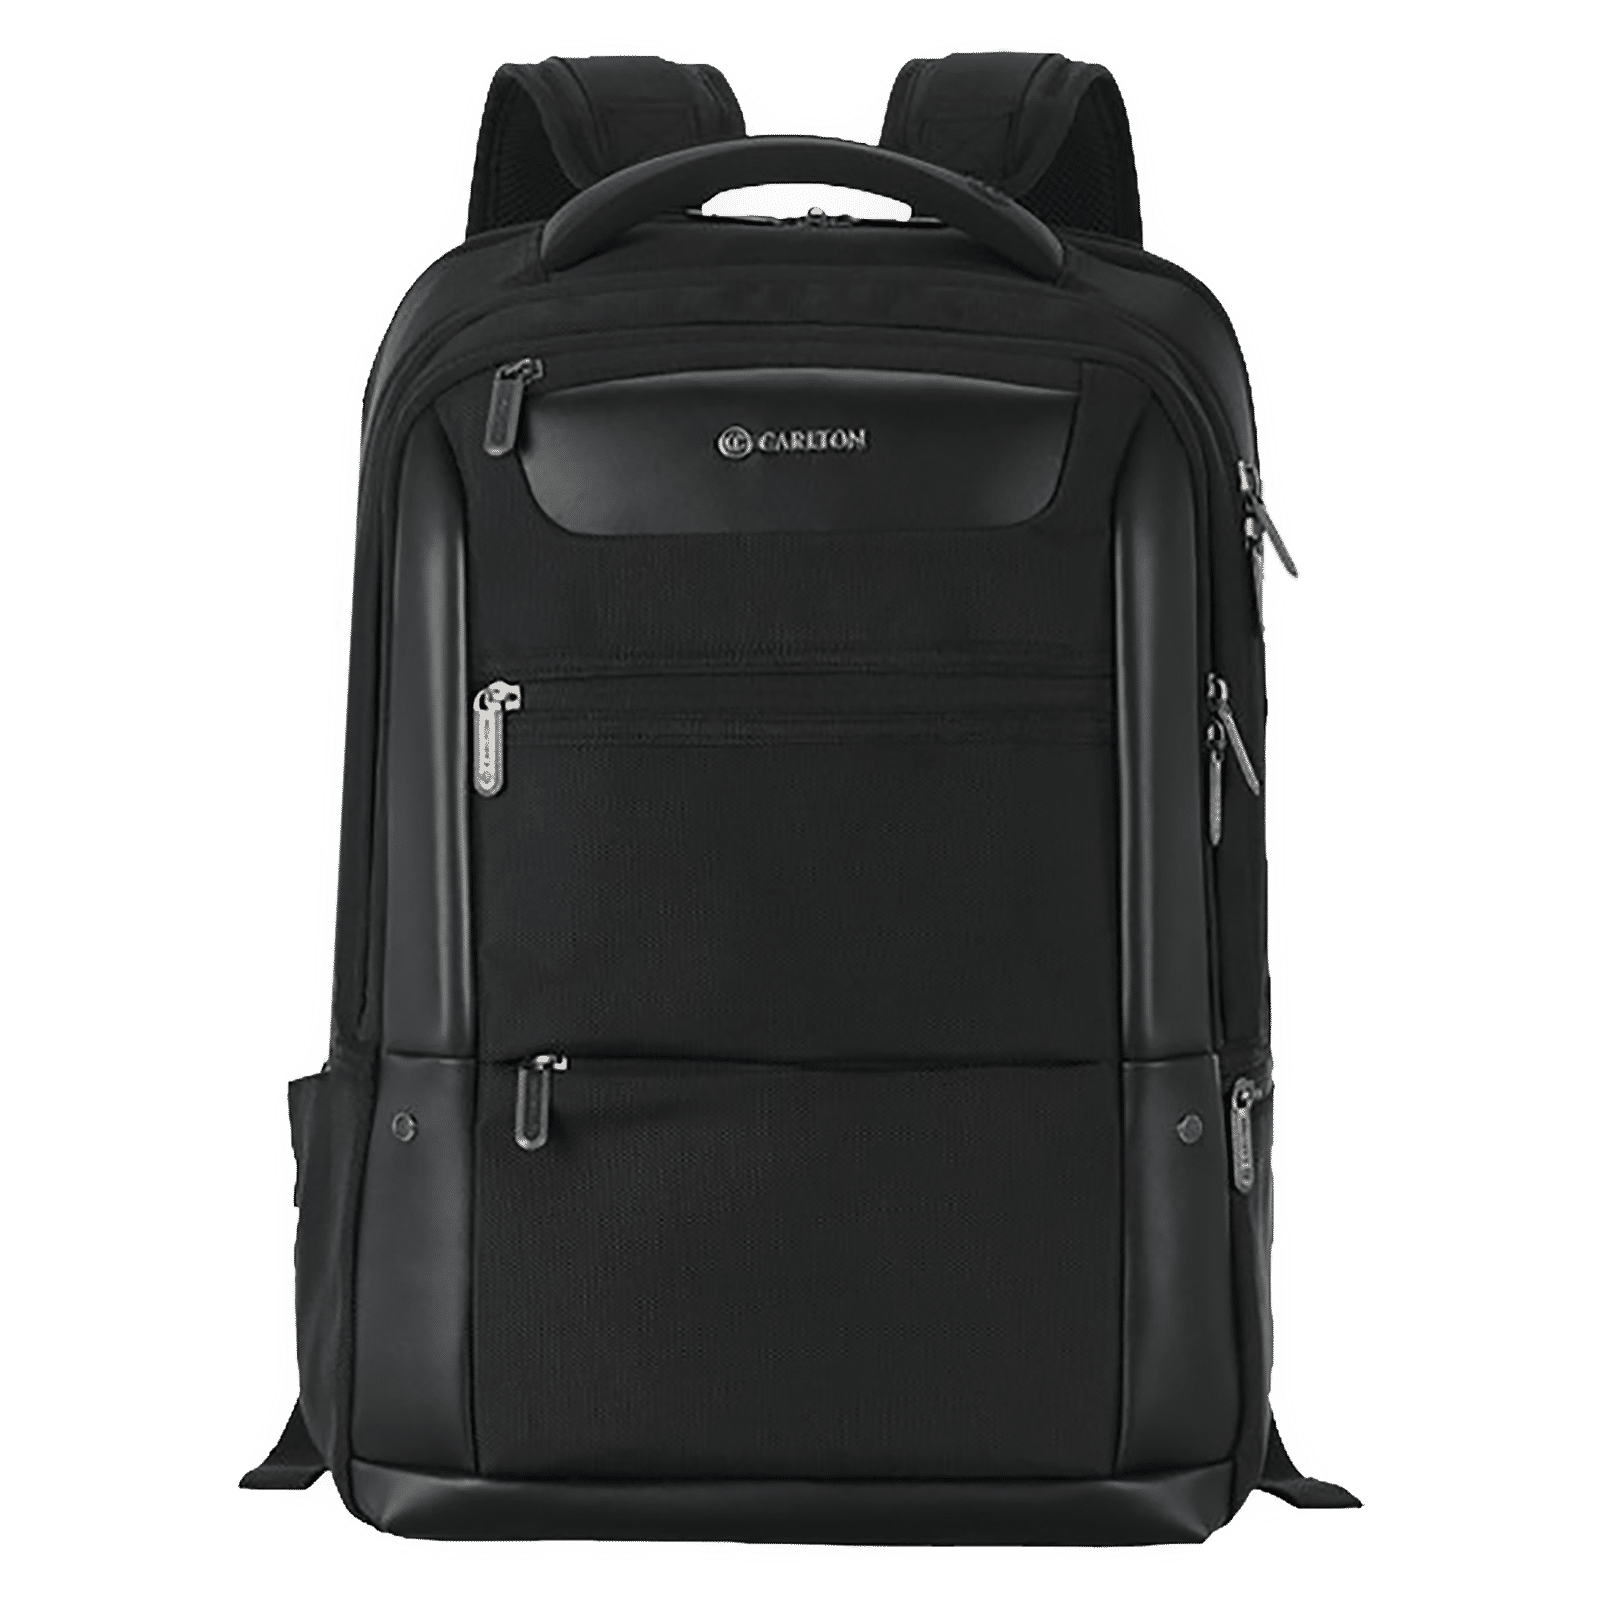 Croma CRXL5211 40 L Laptop Backpack grey - Price in India | Flipkart.com